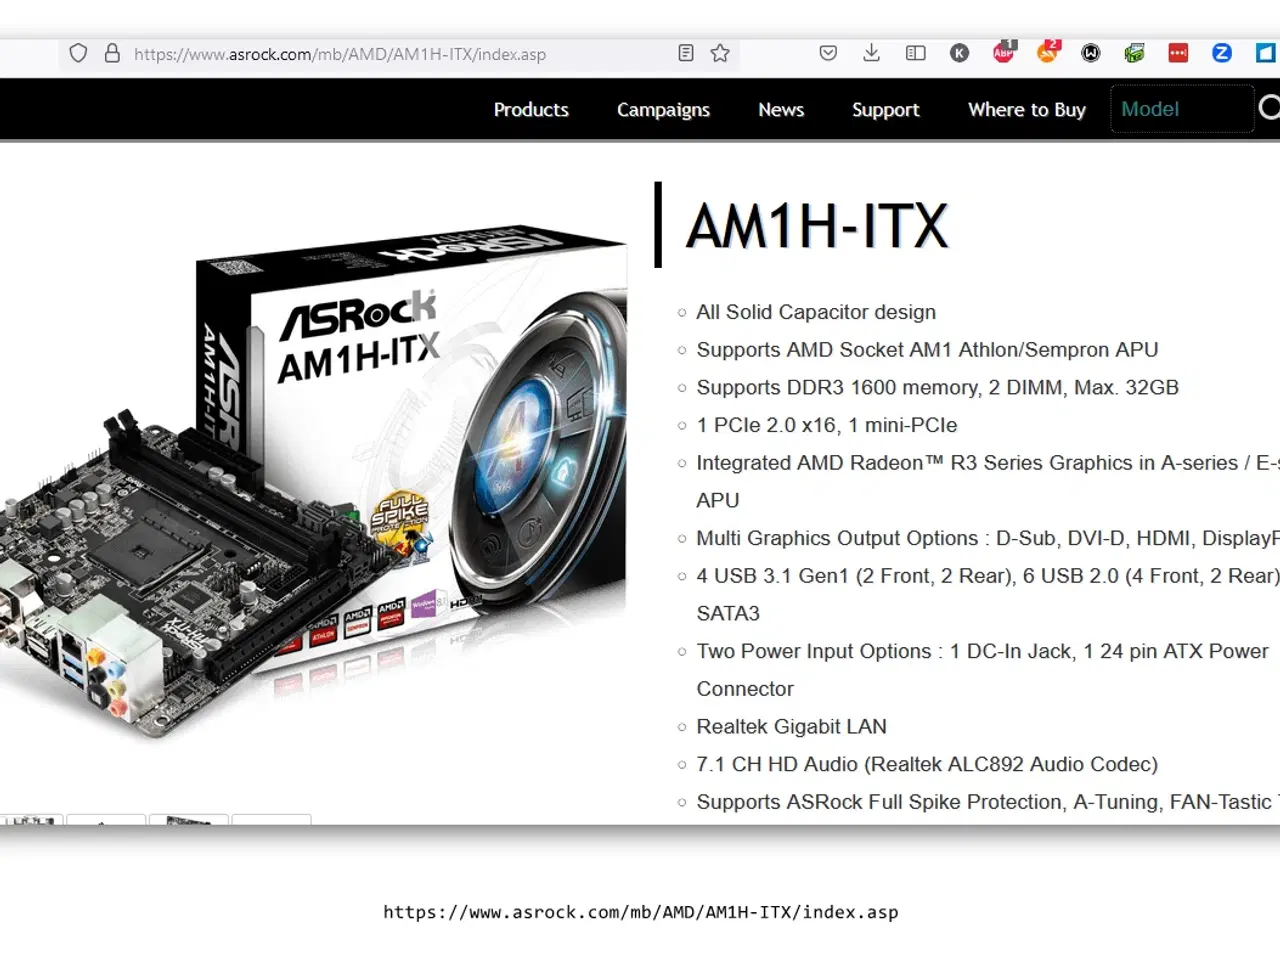 Billede 13 - Asrock AM1H-ITX bundkort med processor og ram